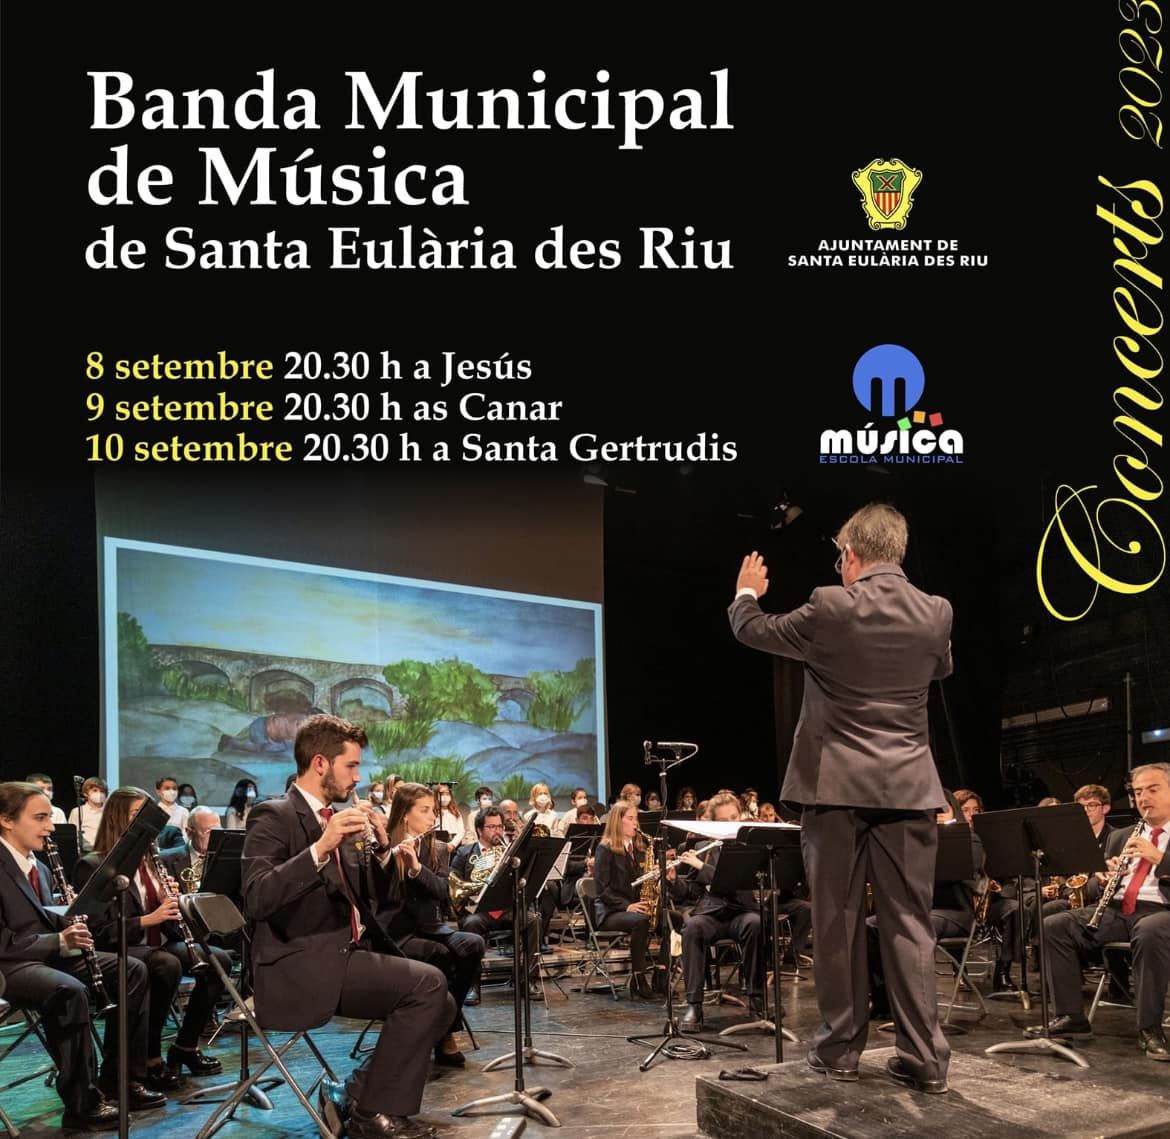 La Banda Municipal de Música ofrecerá tres conciertos gratuitos en espacios abiertos este fin de semana